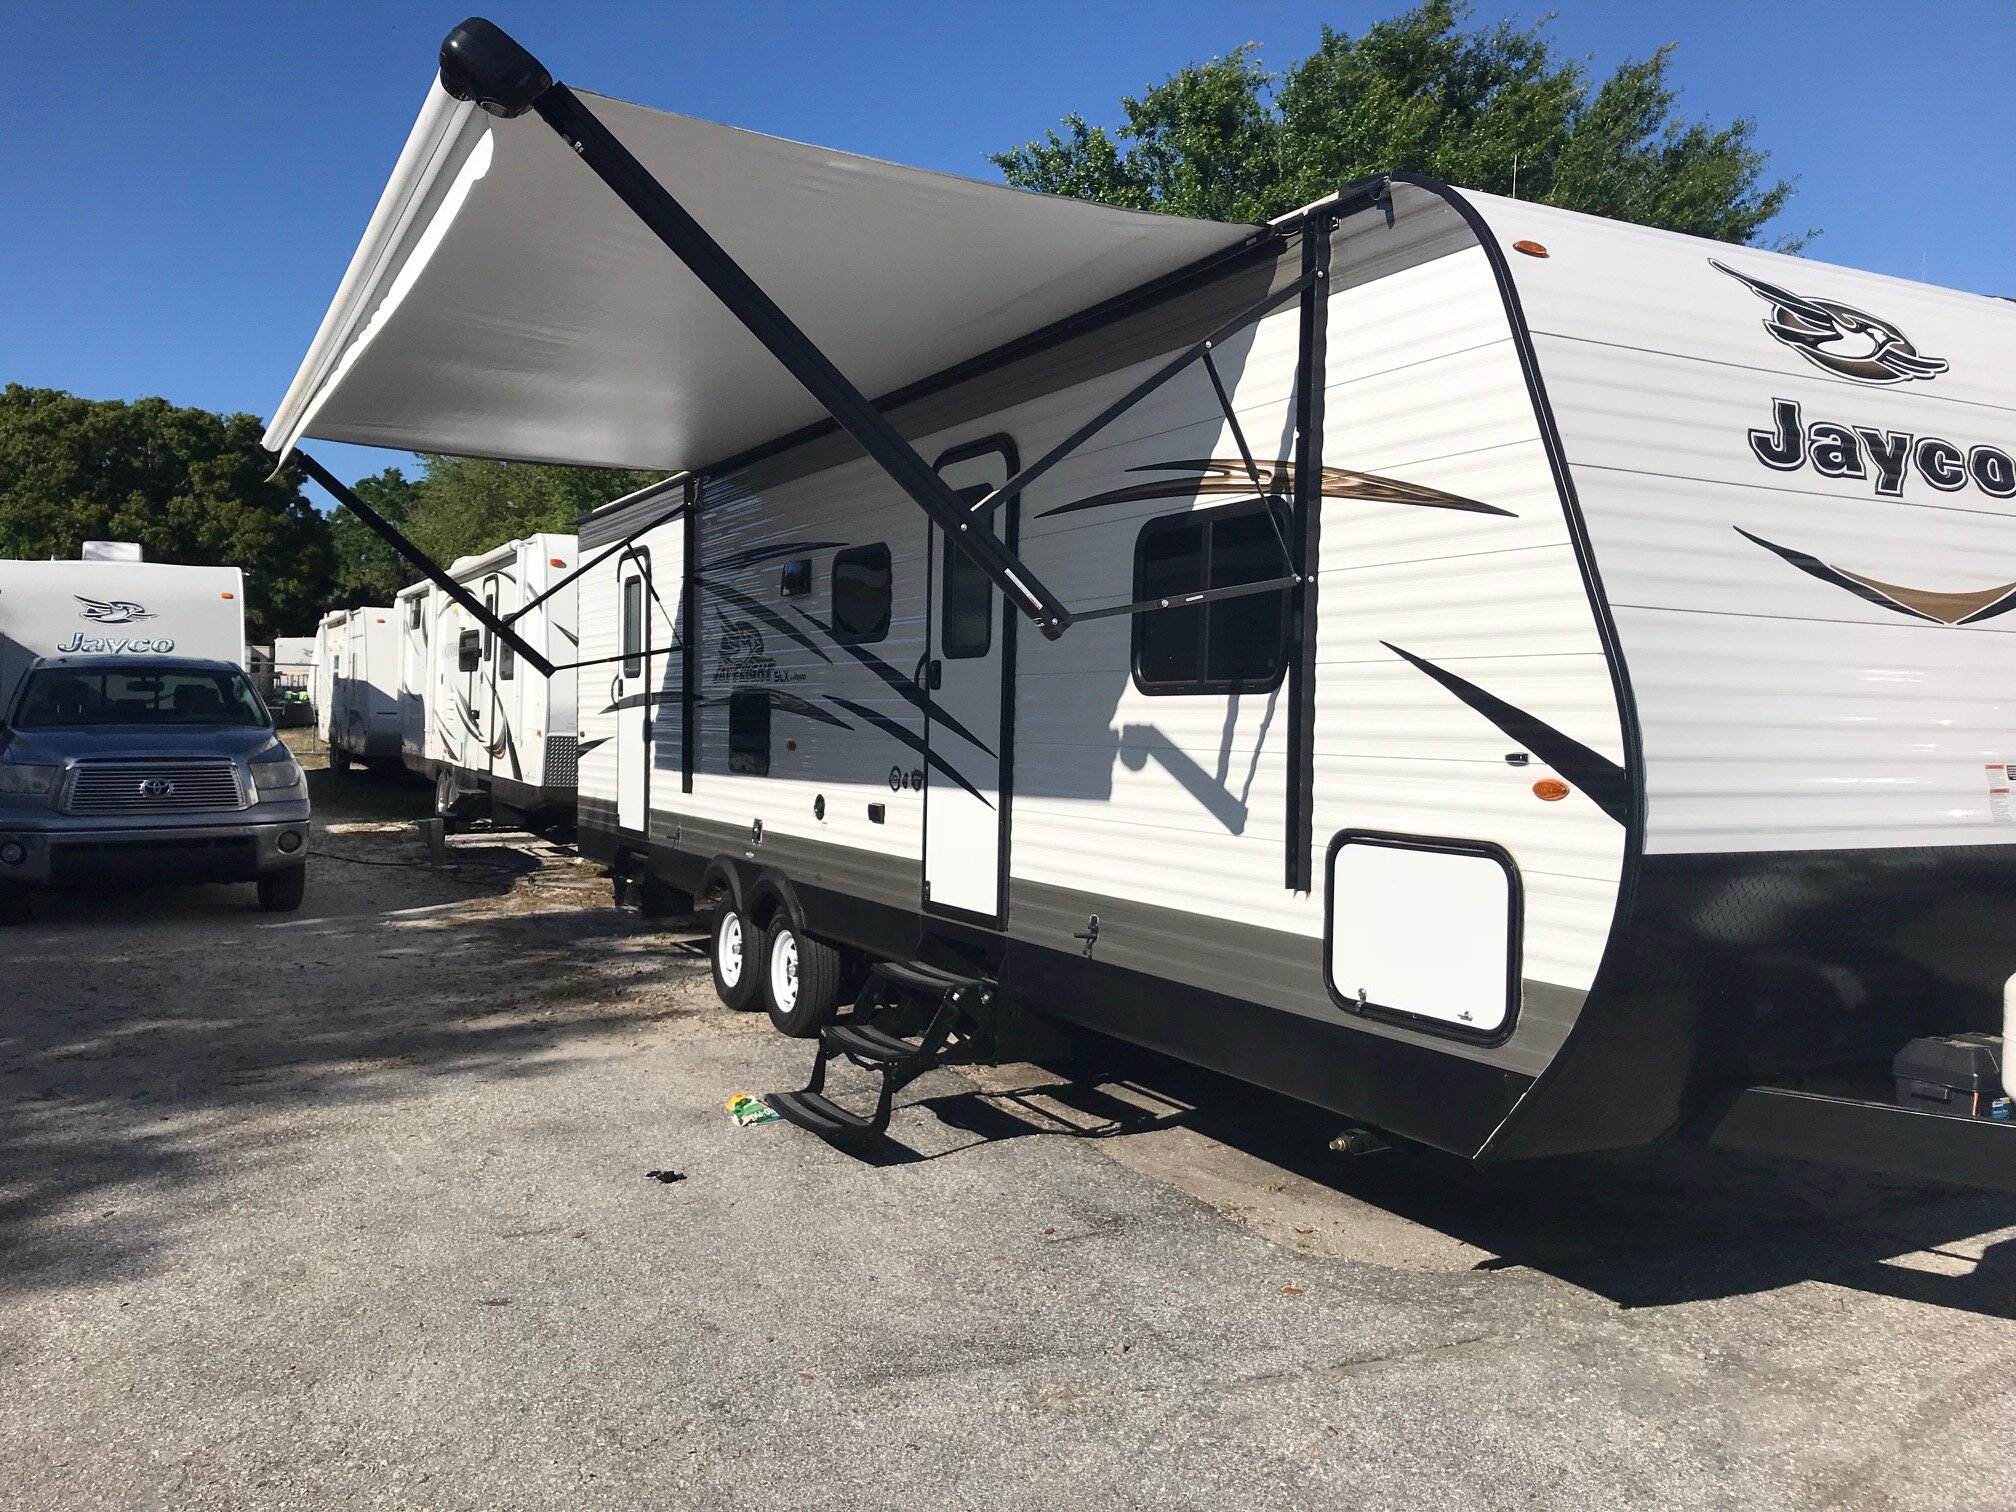 RV - Camper Rental FW51